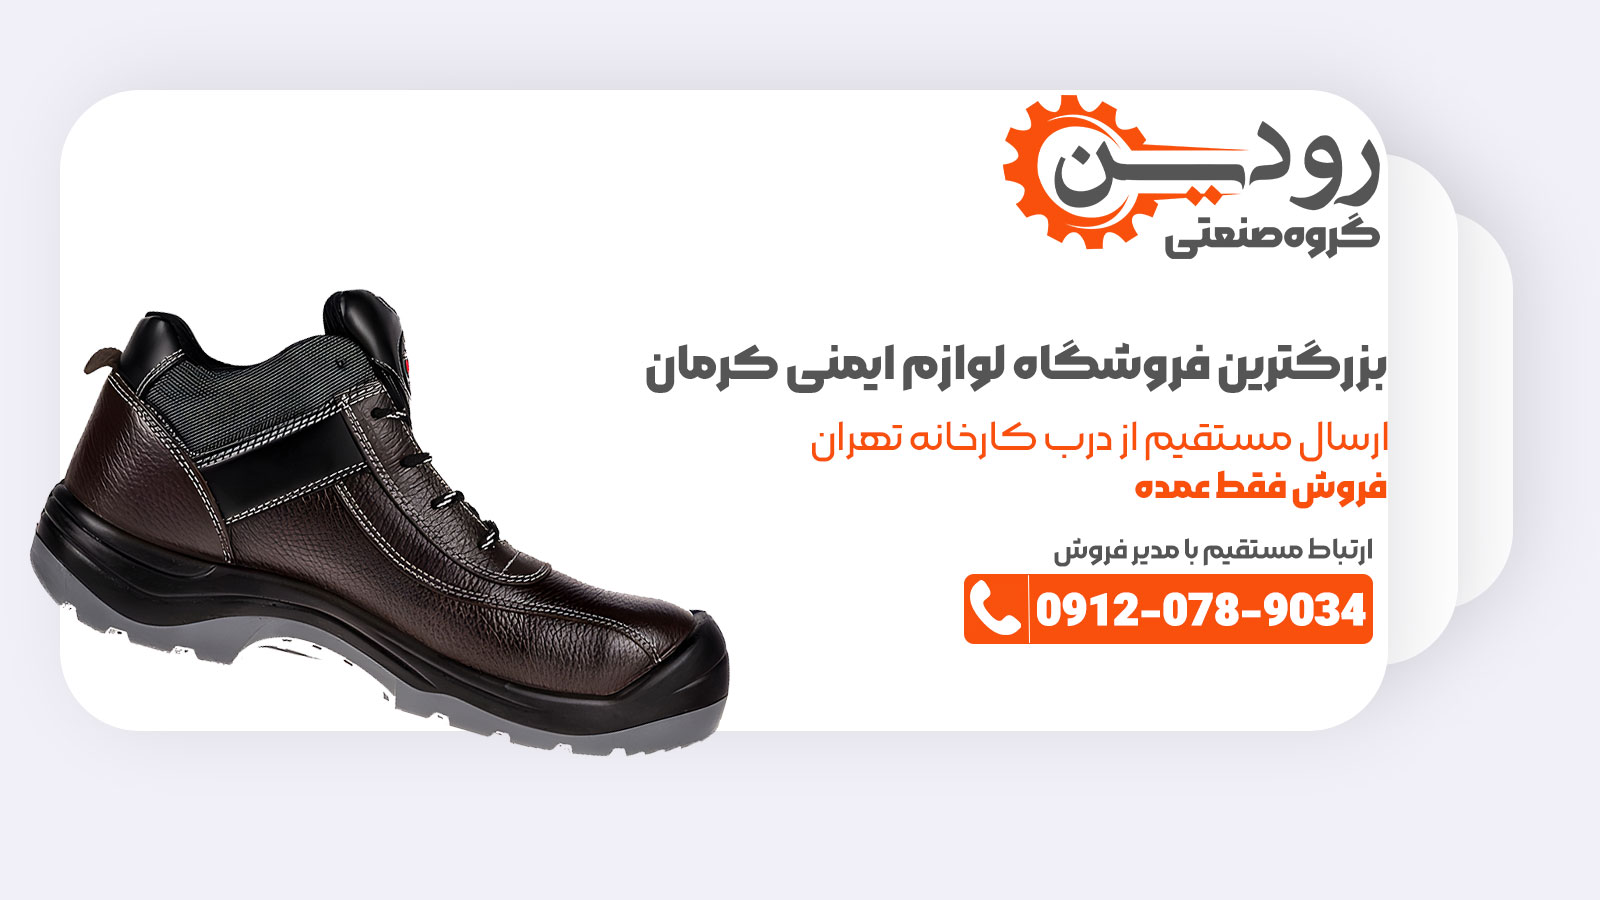 فروشگاه تجهیزات ایمنی در کرمان، تامین کننده انواع لوازم ایمنی فردی است.